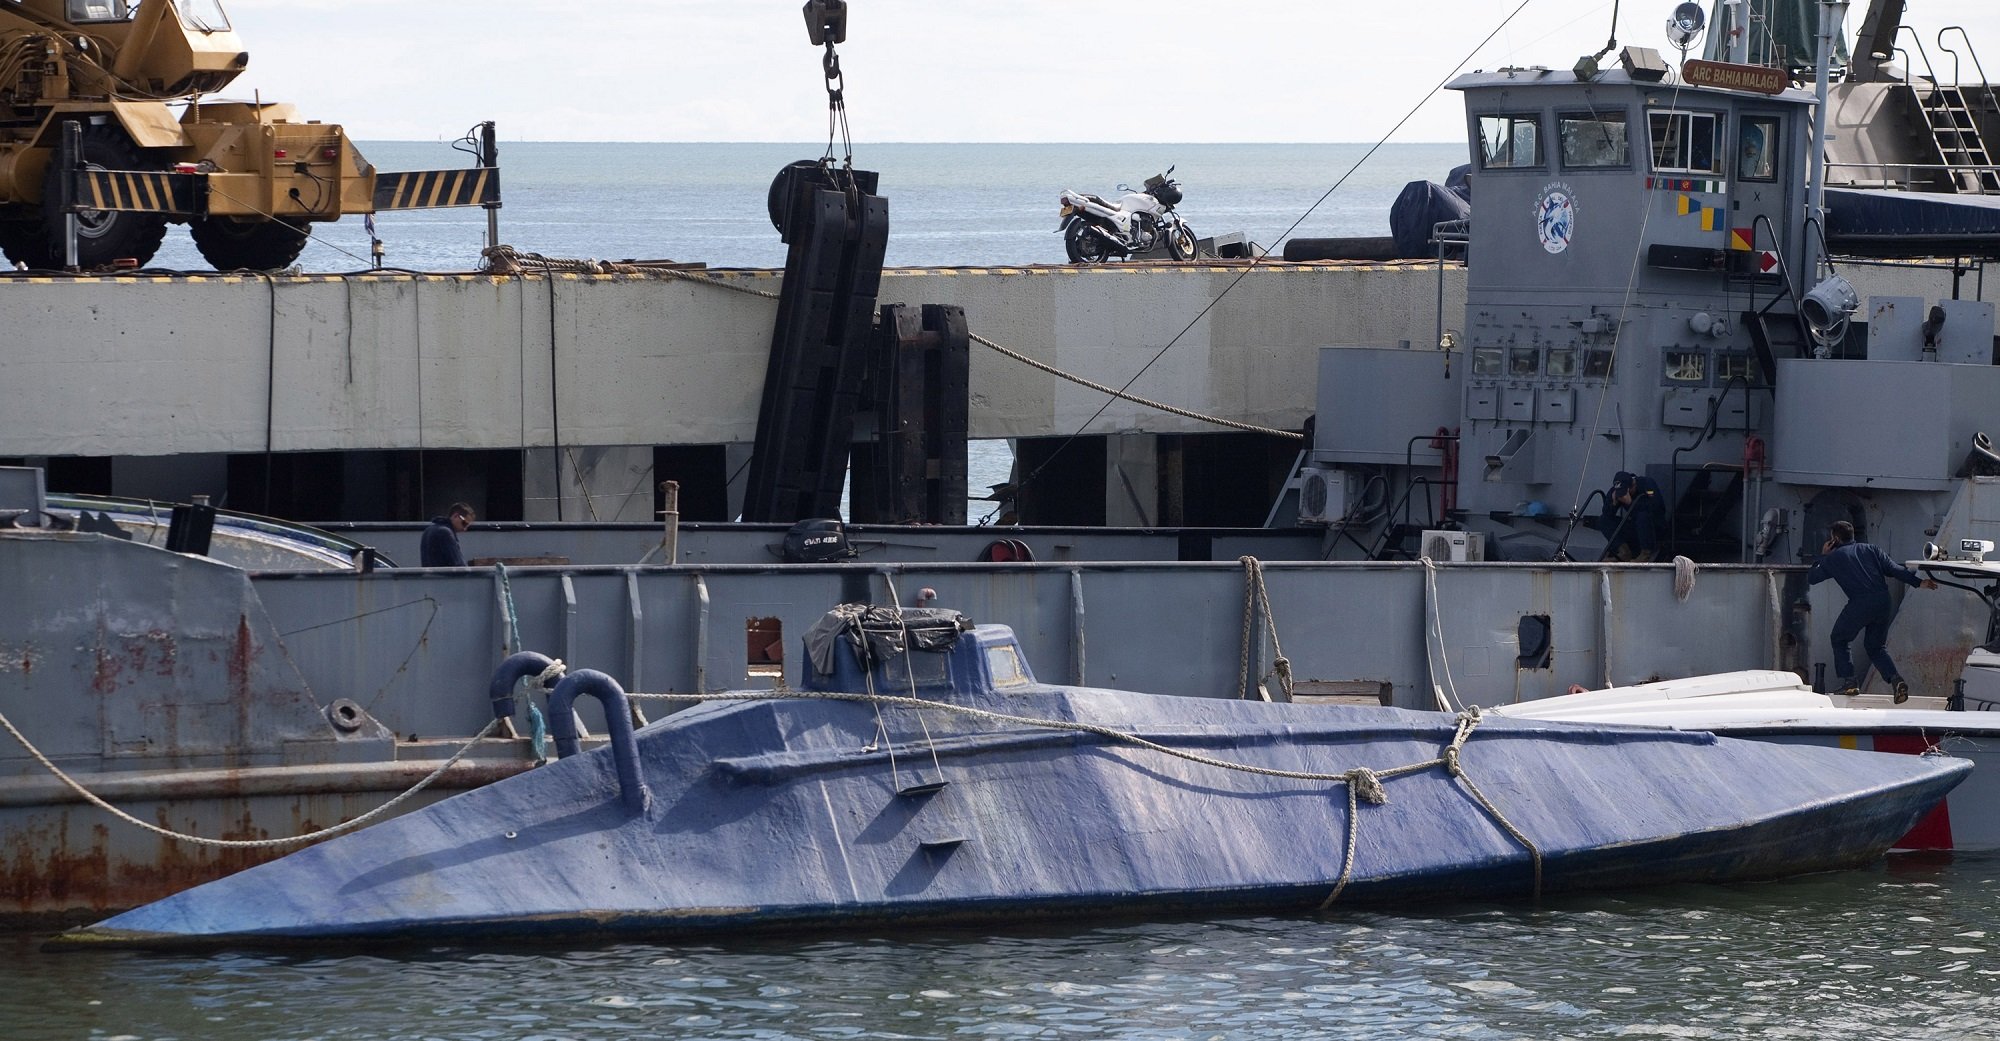 нарко-субмарины подводные лодки наркомафии контрабанда кокаина отвратительные мужики disgusting men